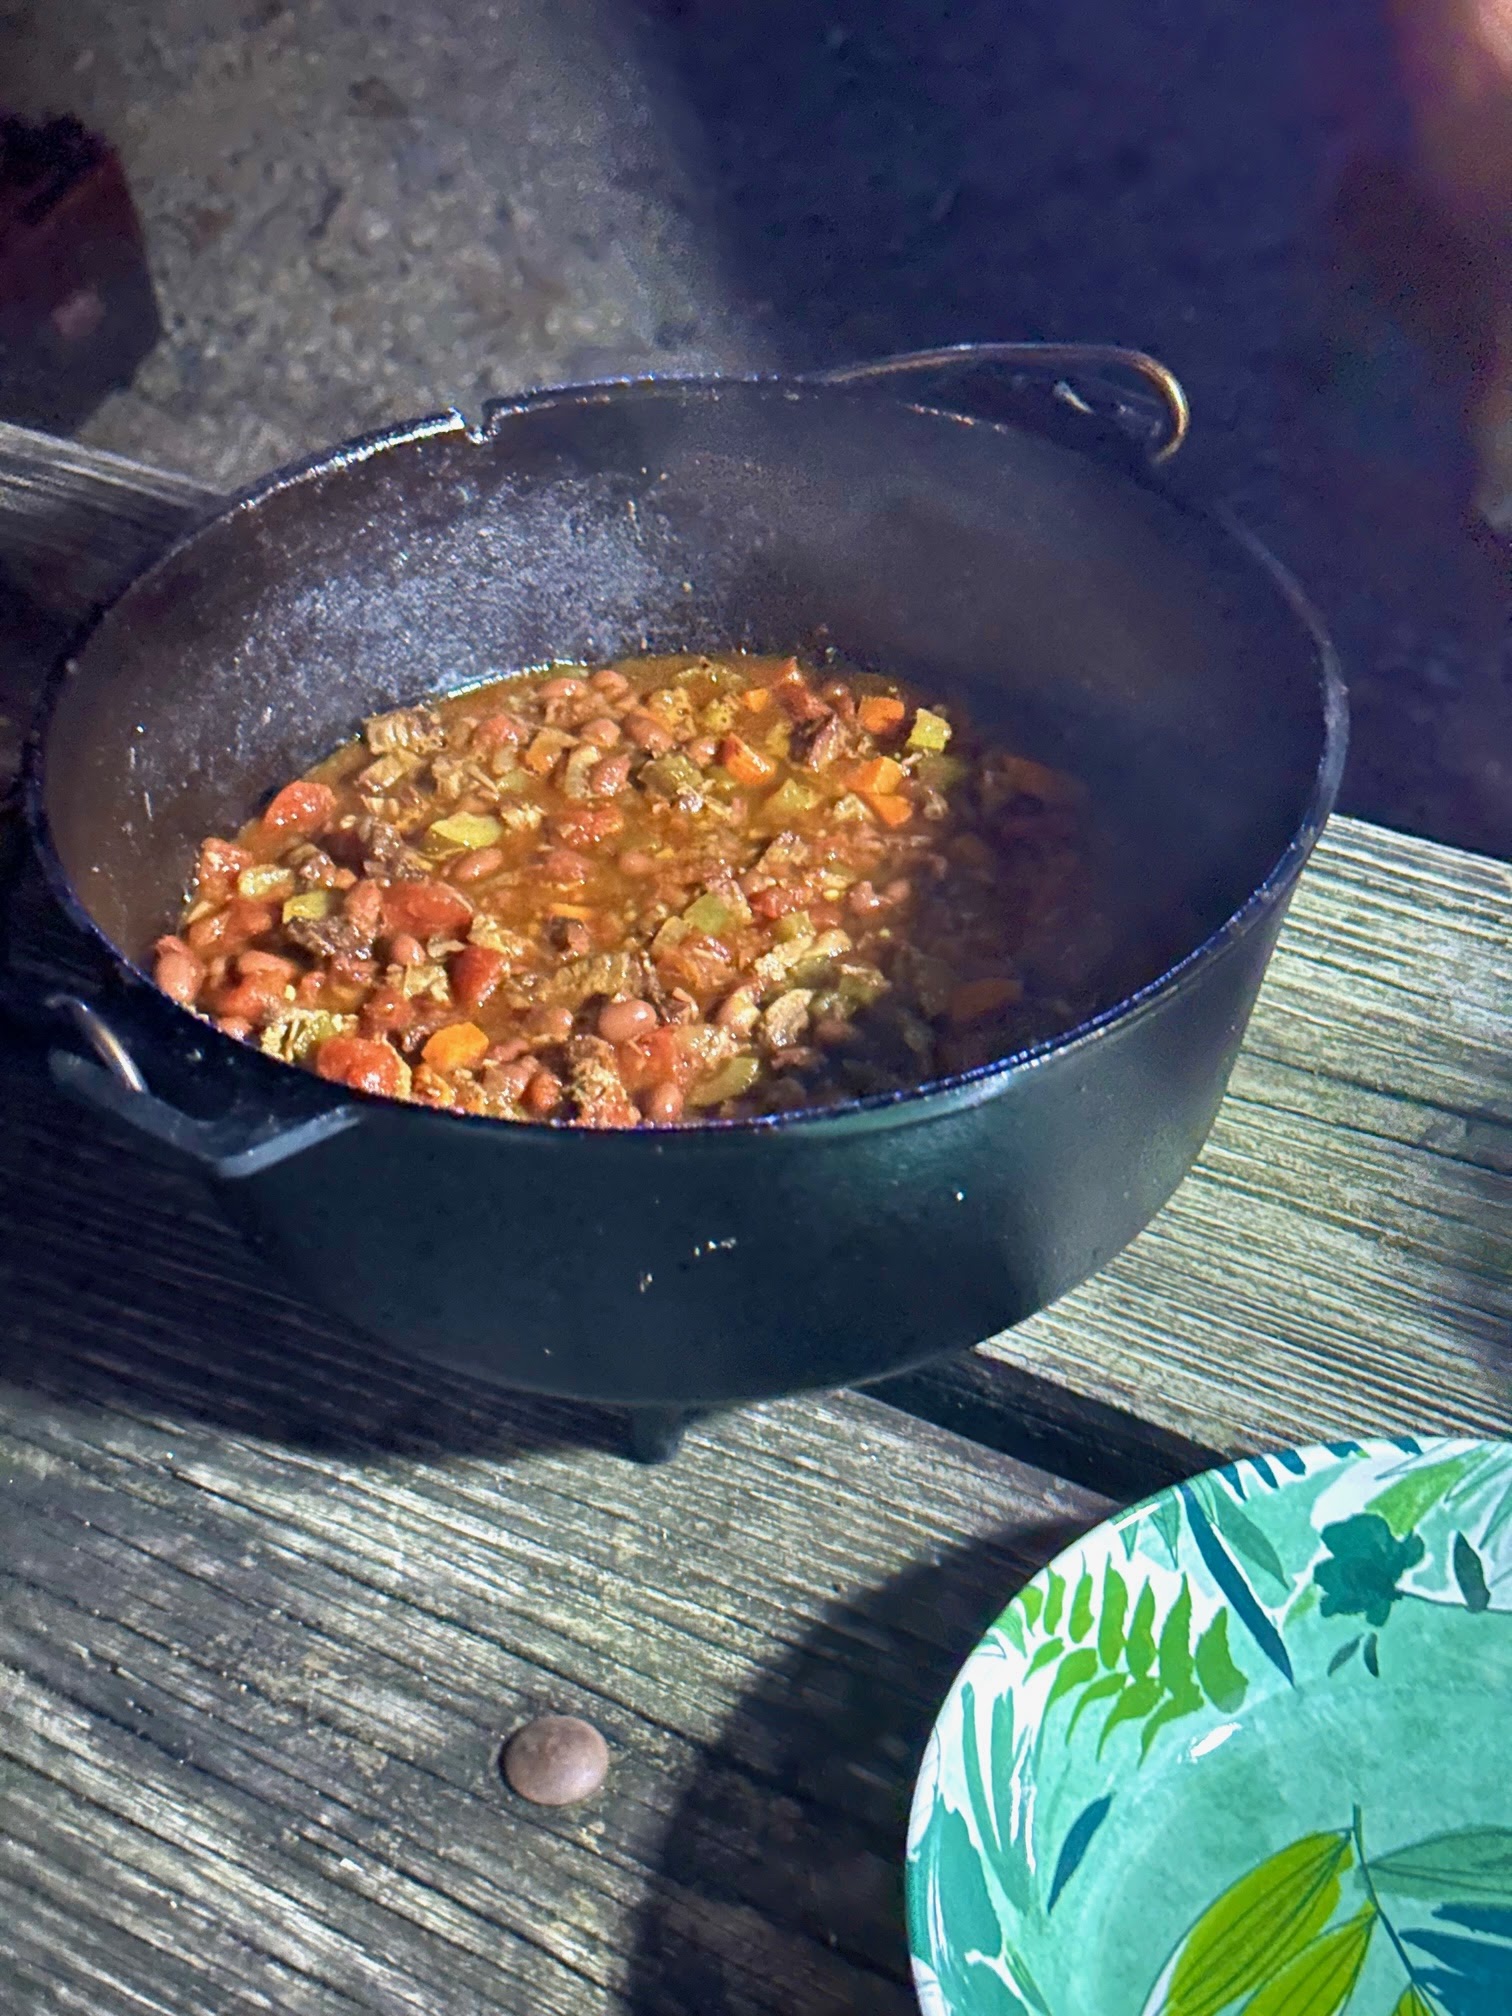 Campfire Dutch Oven Chili with Cornbread - Family Spice